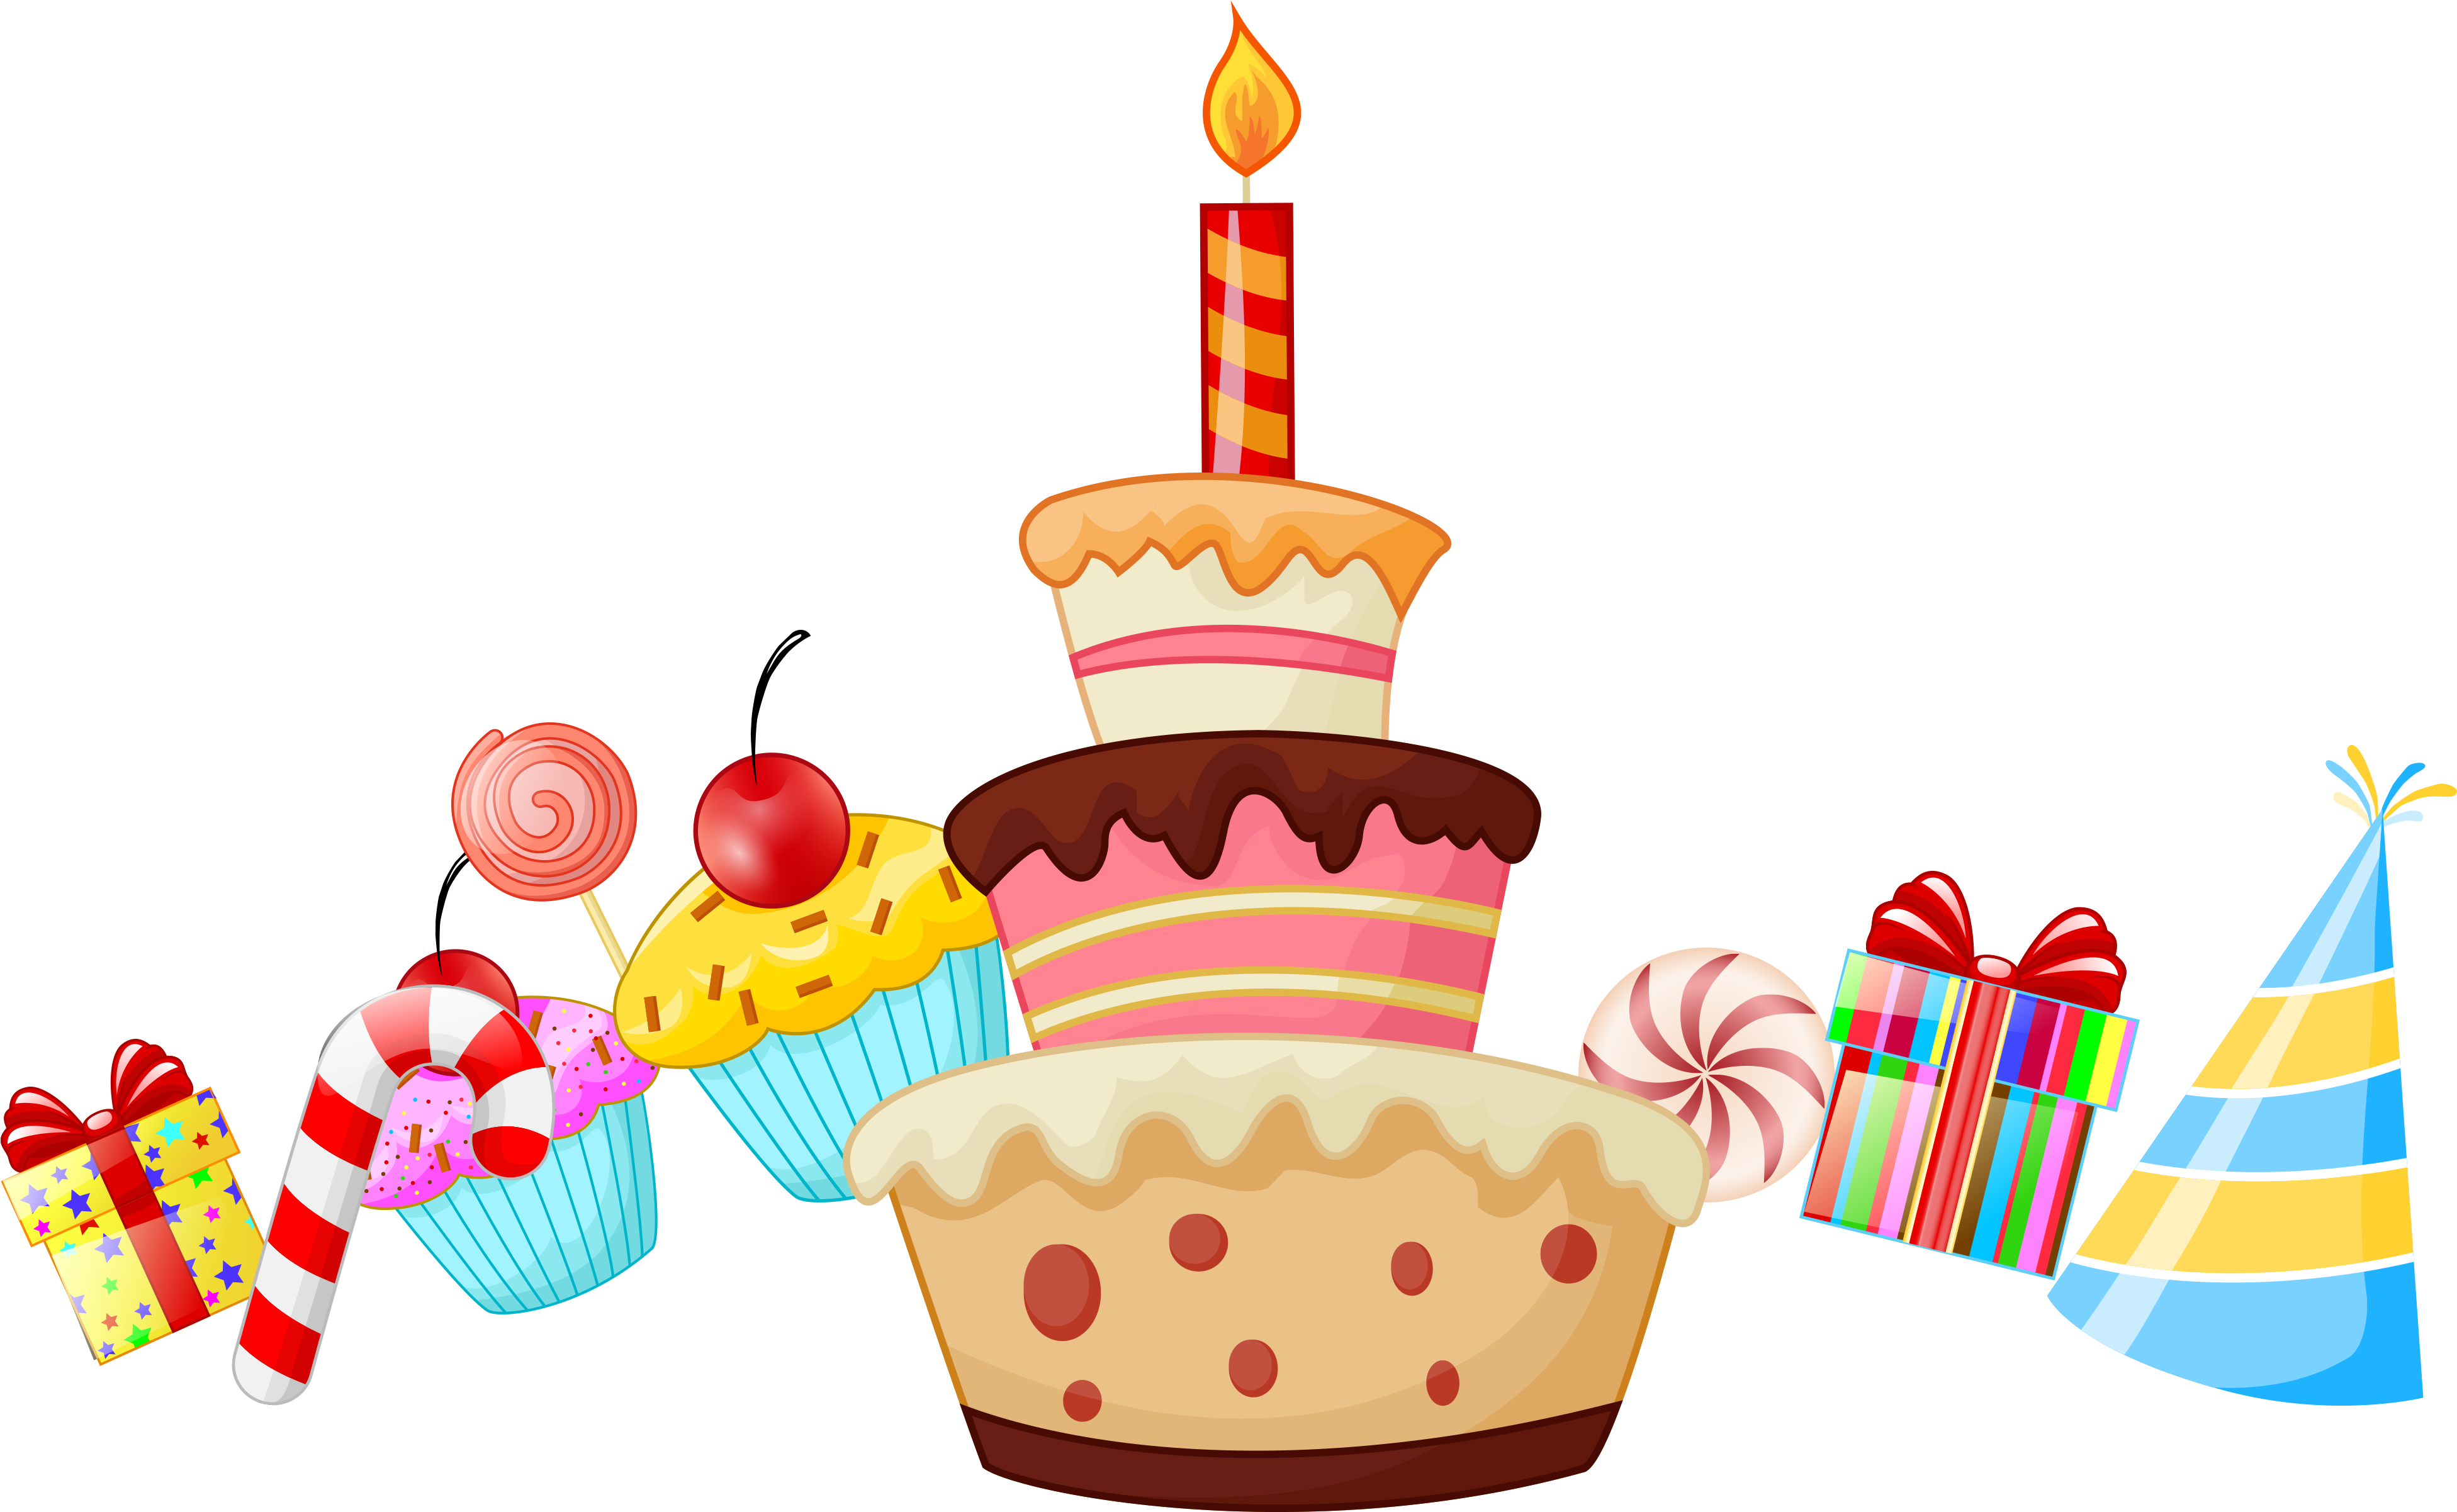 Картинки на прозрачном фоне с днем рождения. С днем рождения клипарт. Клипарт с днем рождения на прозрачном фоне. День рождения тортик вектор. Торт и подарки на прозрачном фоне.